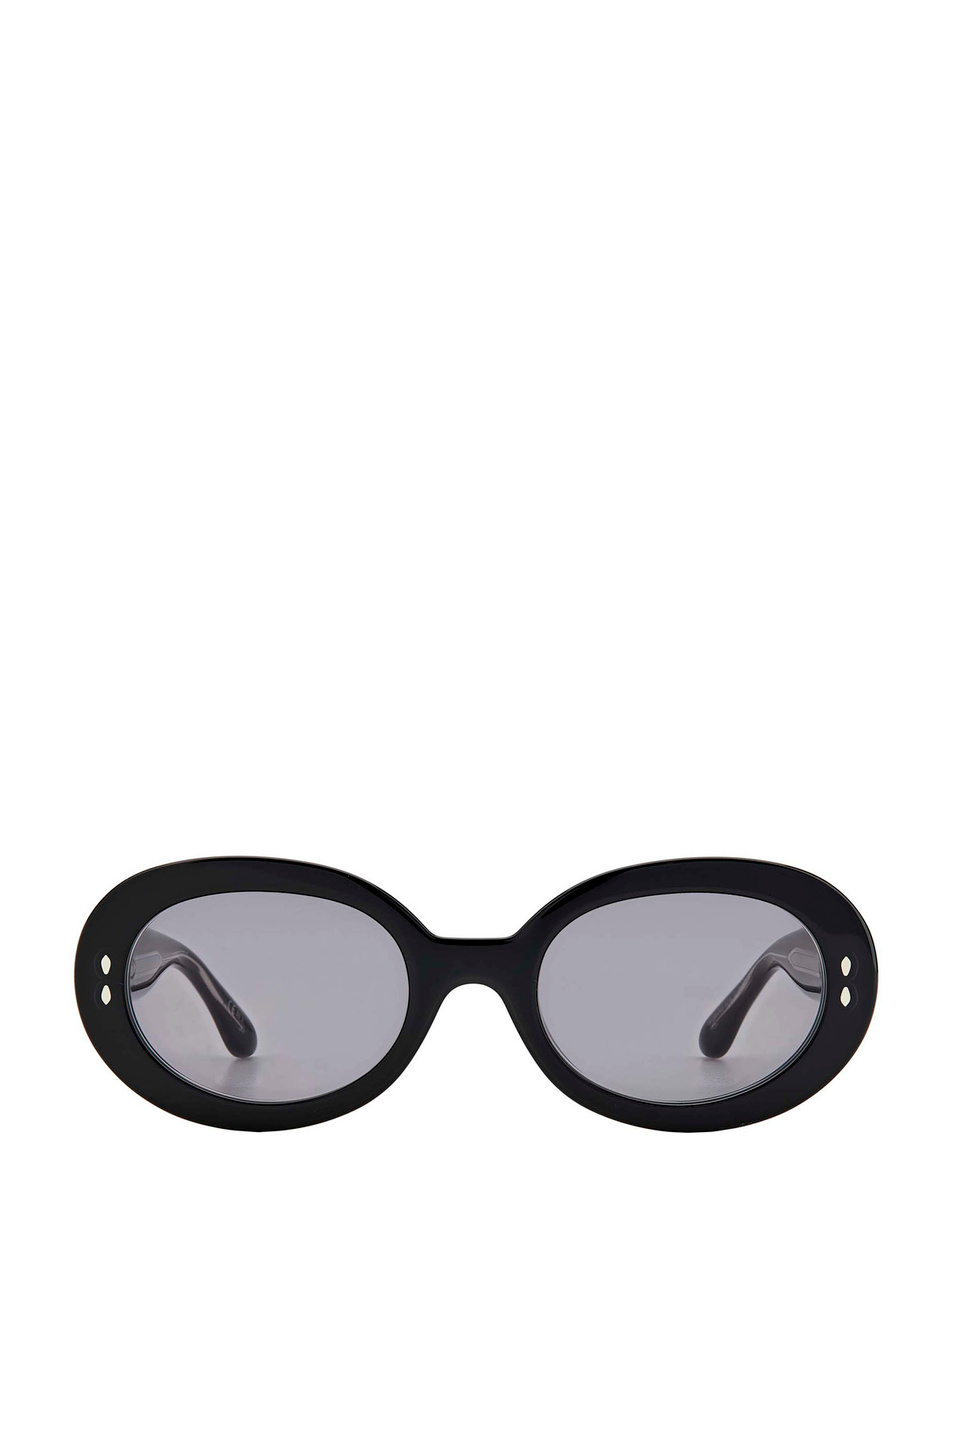 Isabel Marant Солнцезащитные очки IM 0003/S (цвет ), артикул IM 0003/S | Фото 2